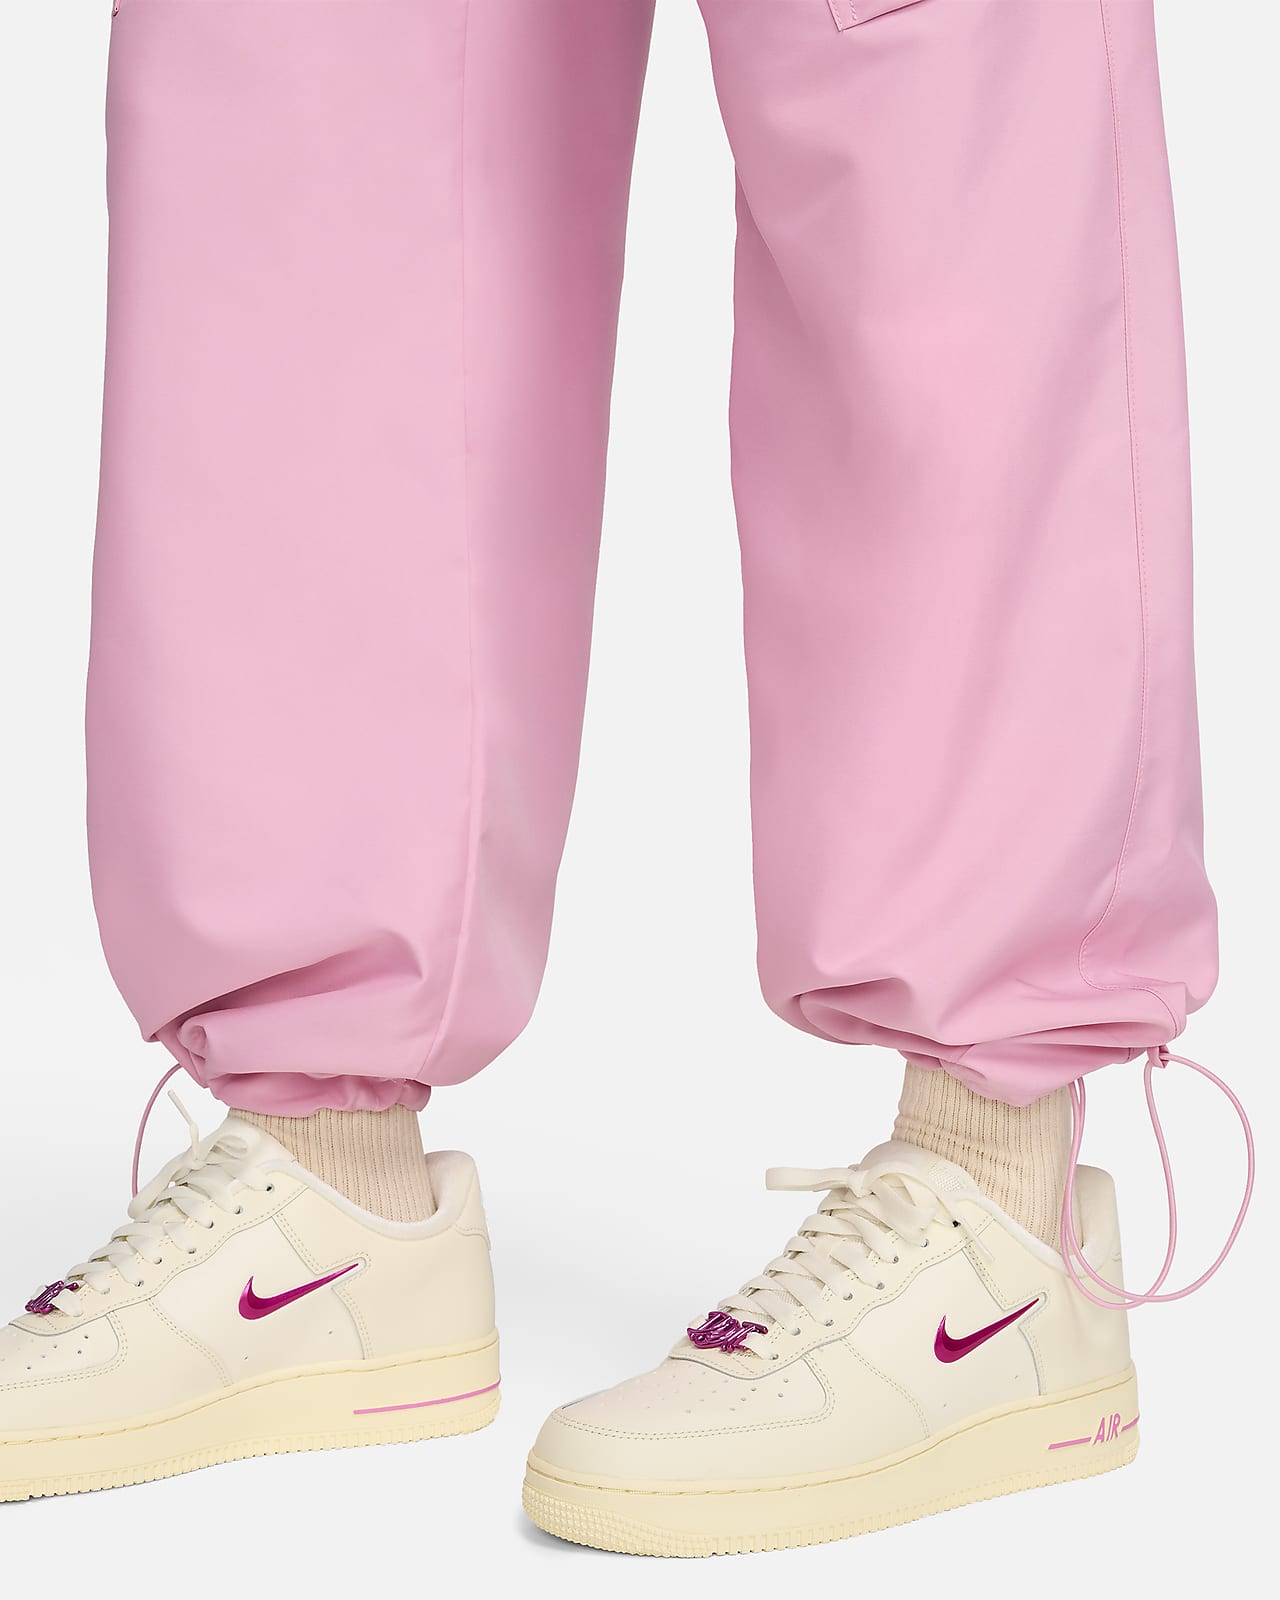 Nike Sportswear Women's Woven Cargo Trousers